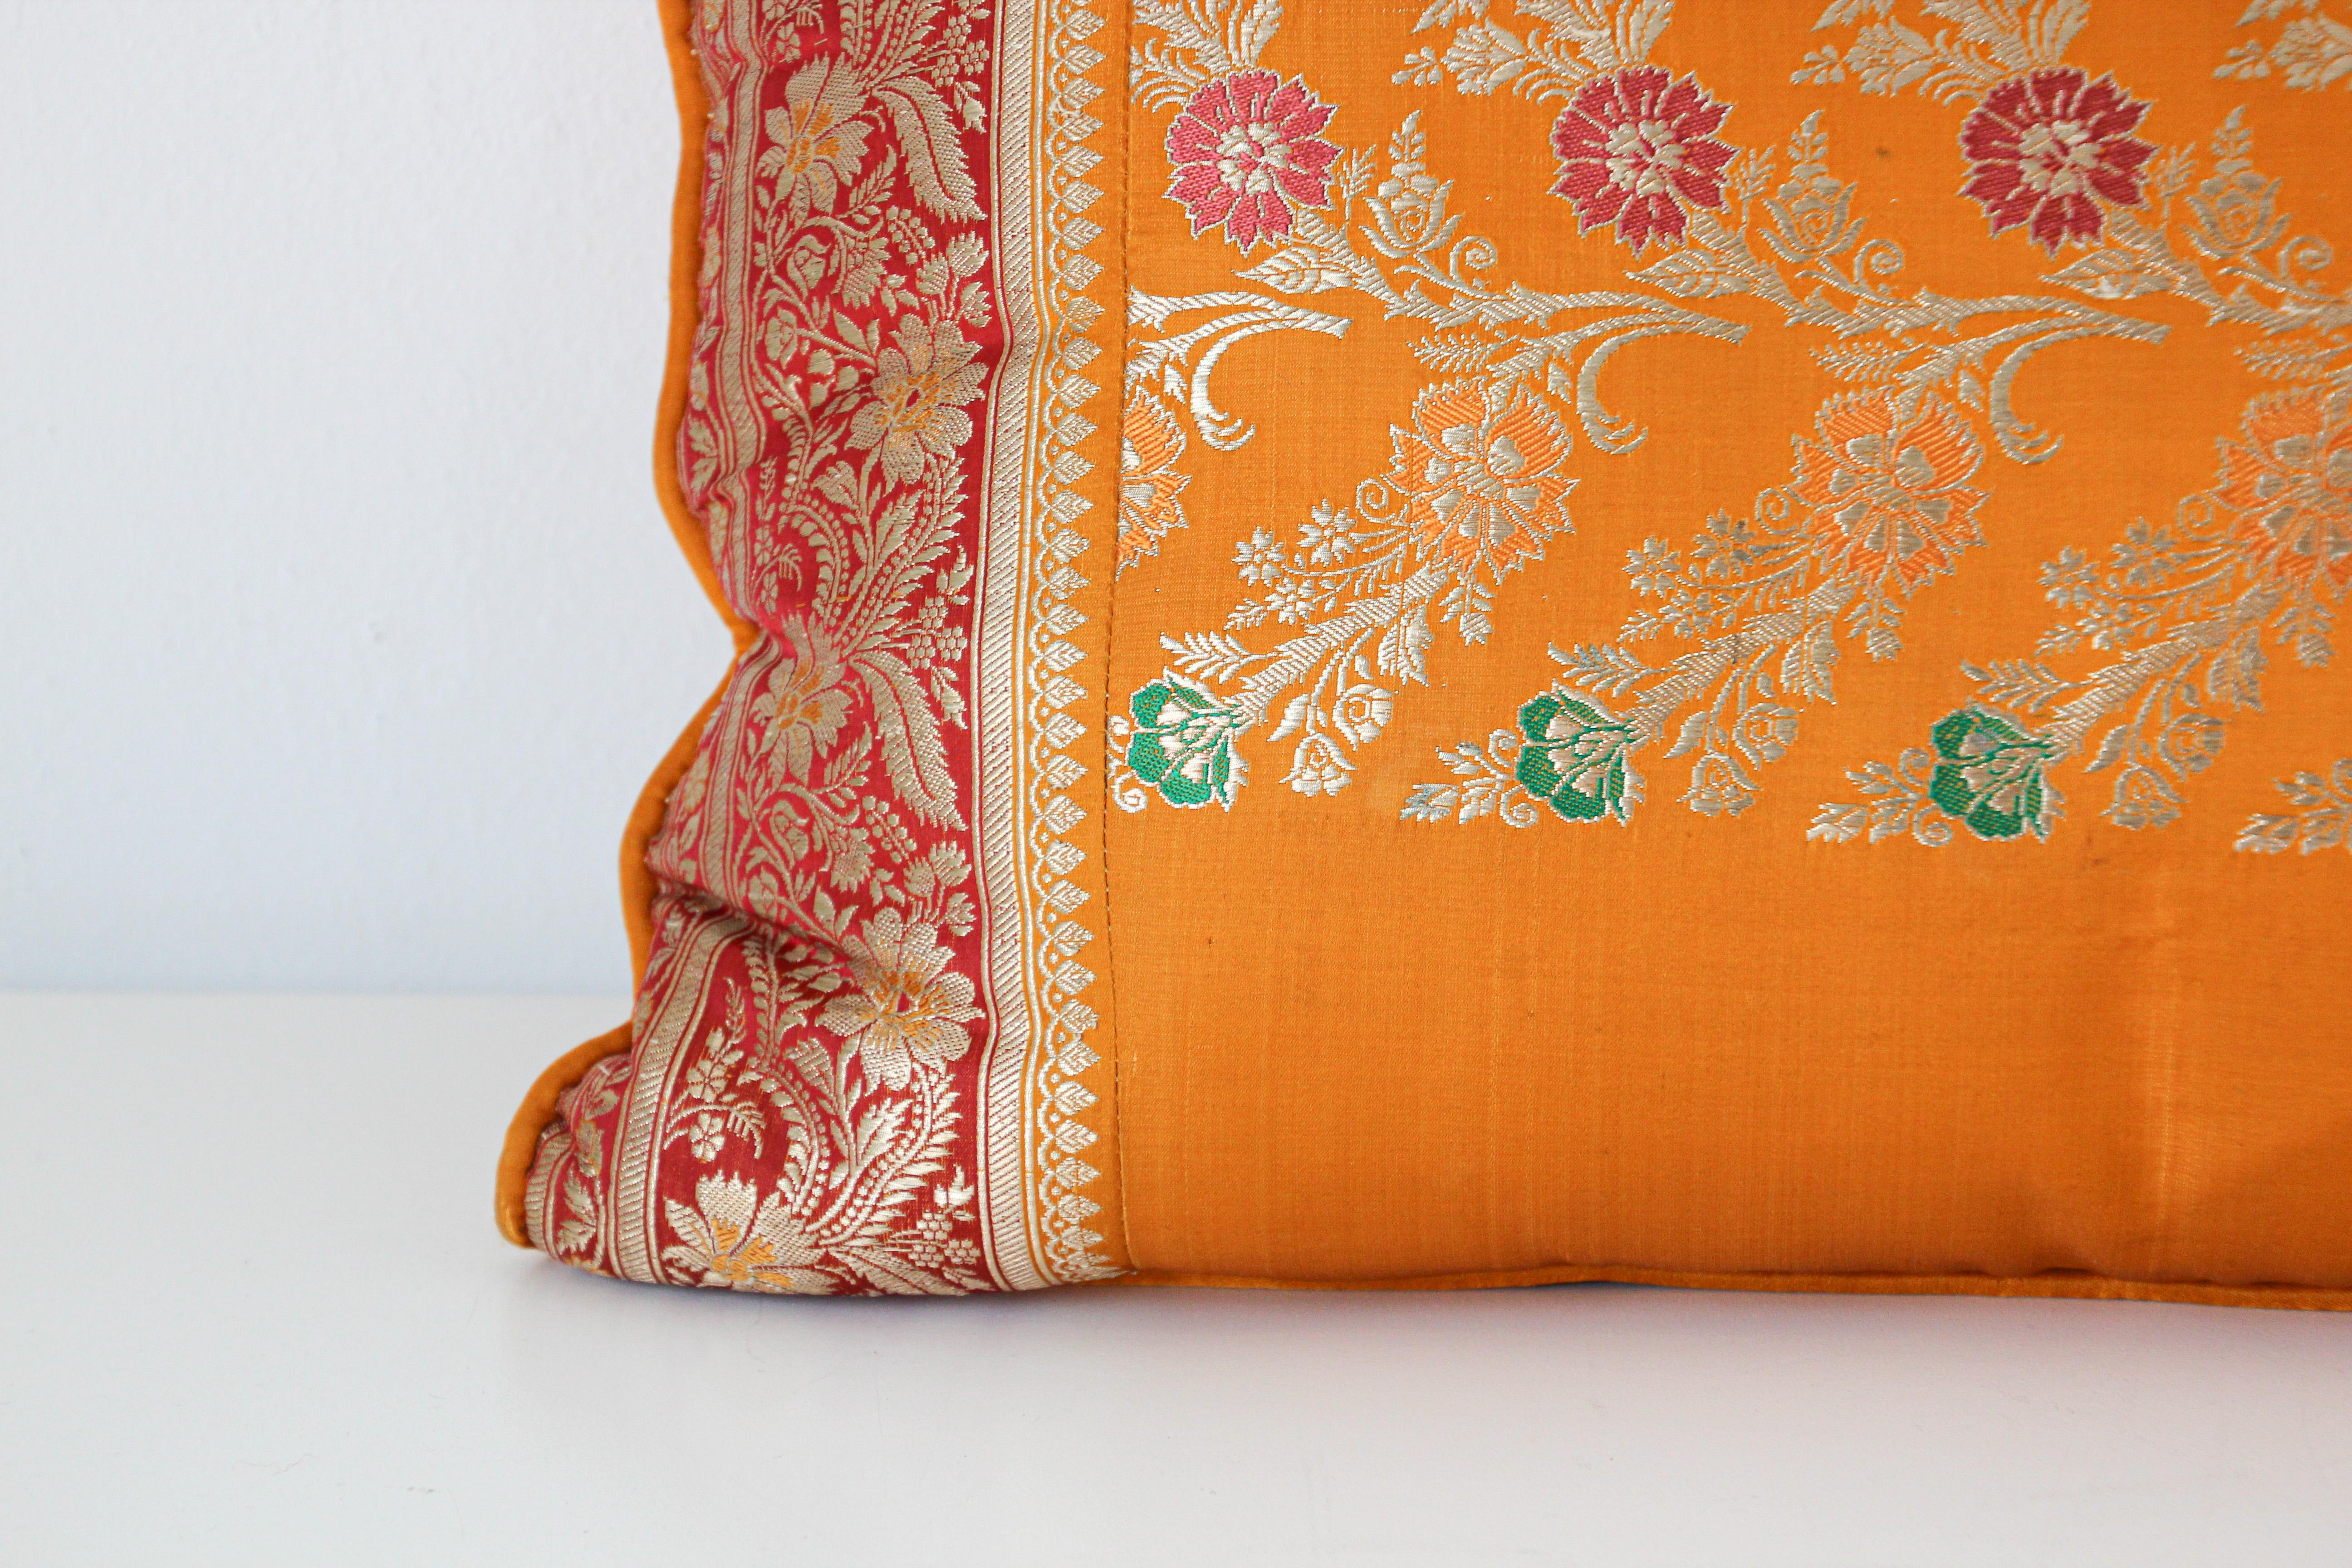 Coussin lombaire en soie fait sur mesure à partir d'un sari de mariage en soie dans les couleurs orange, fushia, or et vert.
Garnitures décoratives torsadées tout autour.
Coussin lombaire décoratif de luxe de style moghol du Rajasthan.
Fabriqué